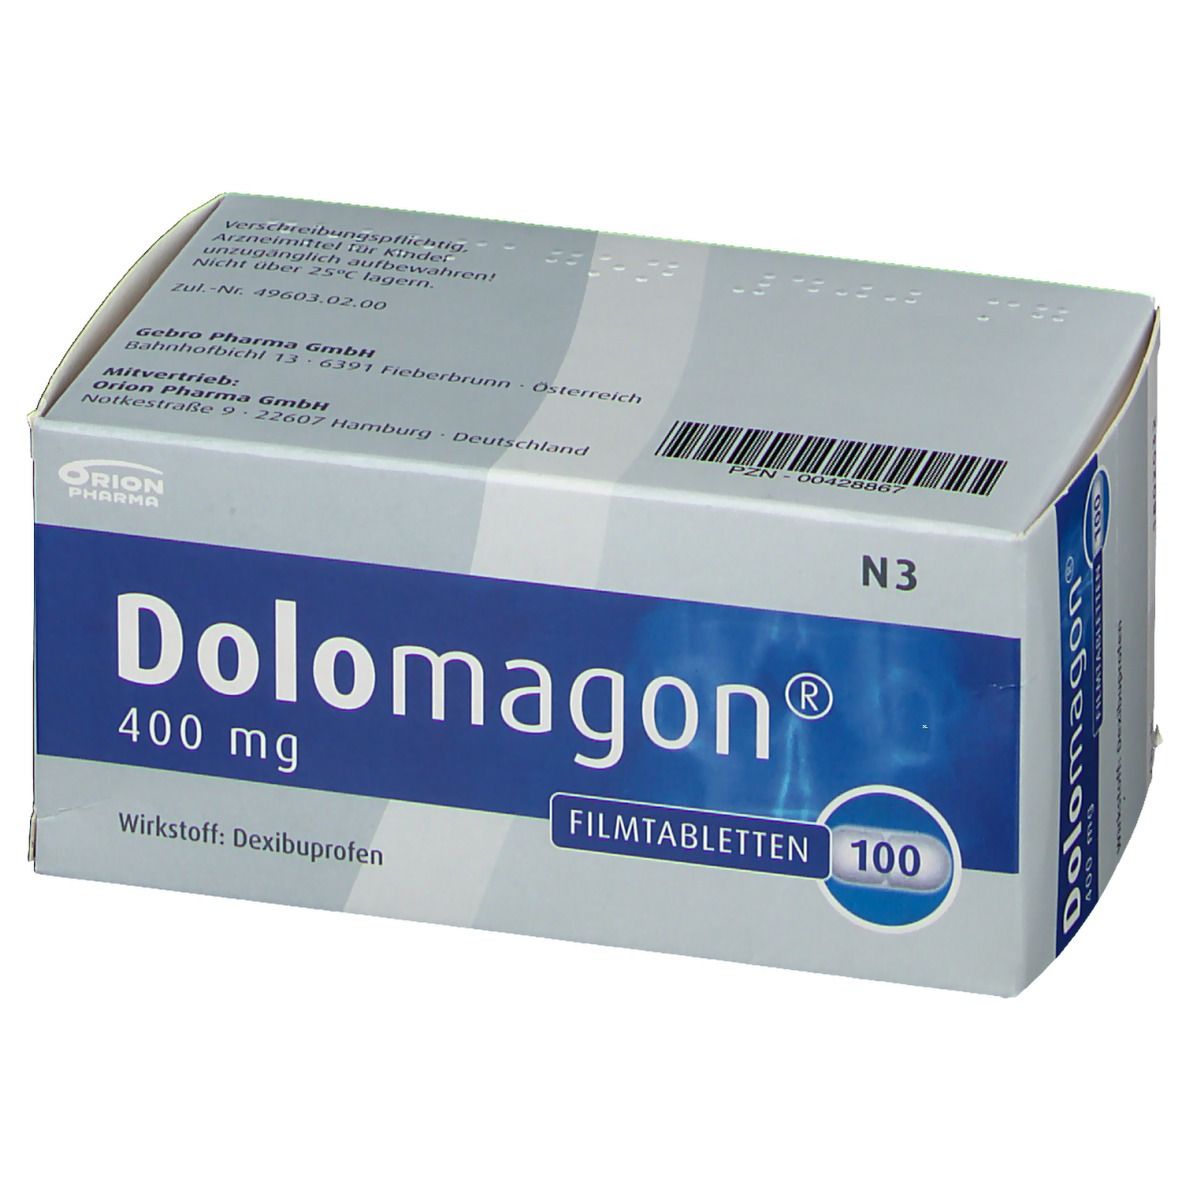 DOLOMAGON 400 mg Filmtabletten